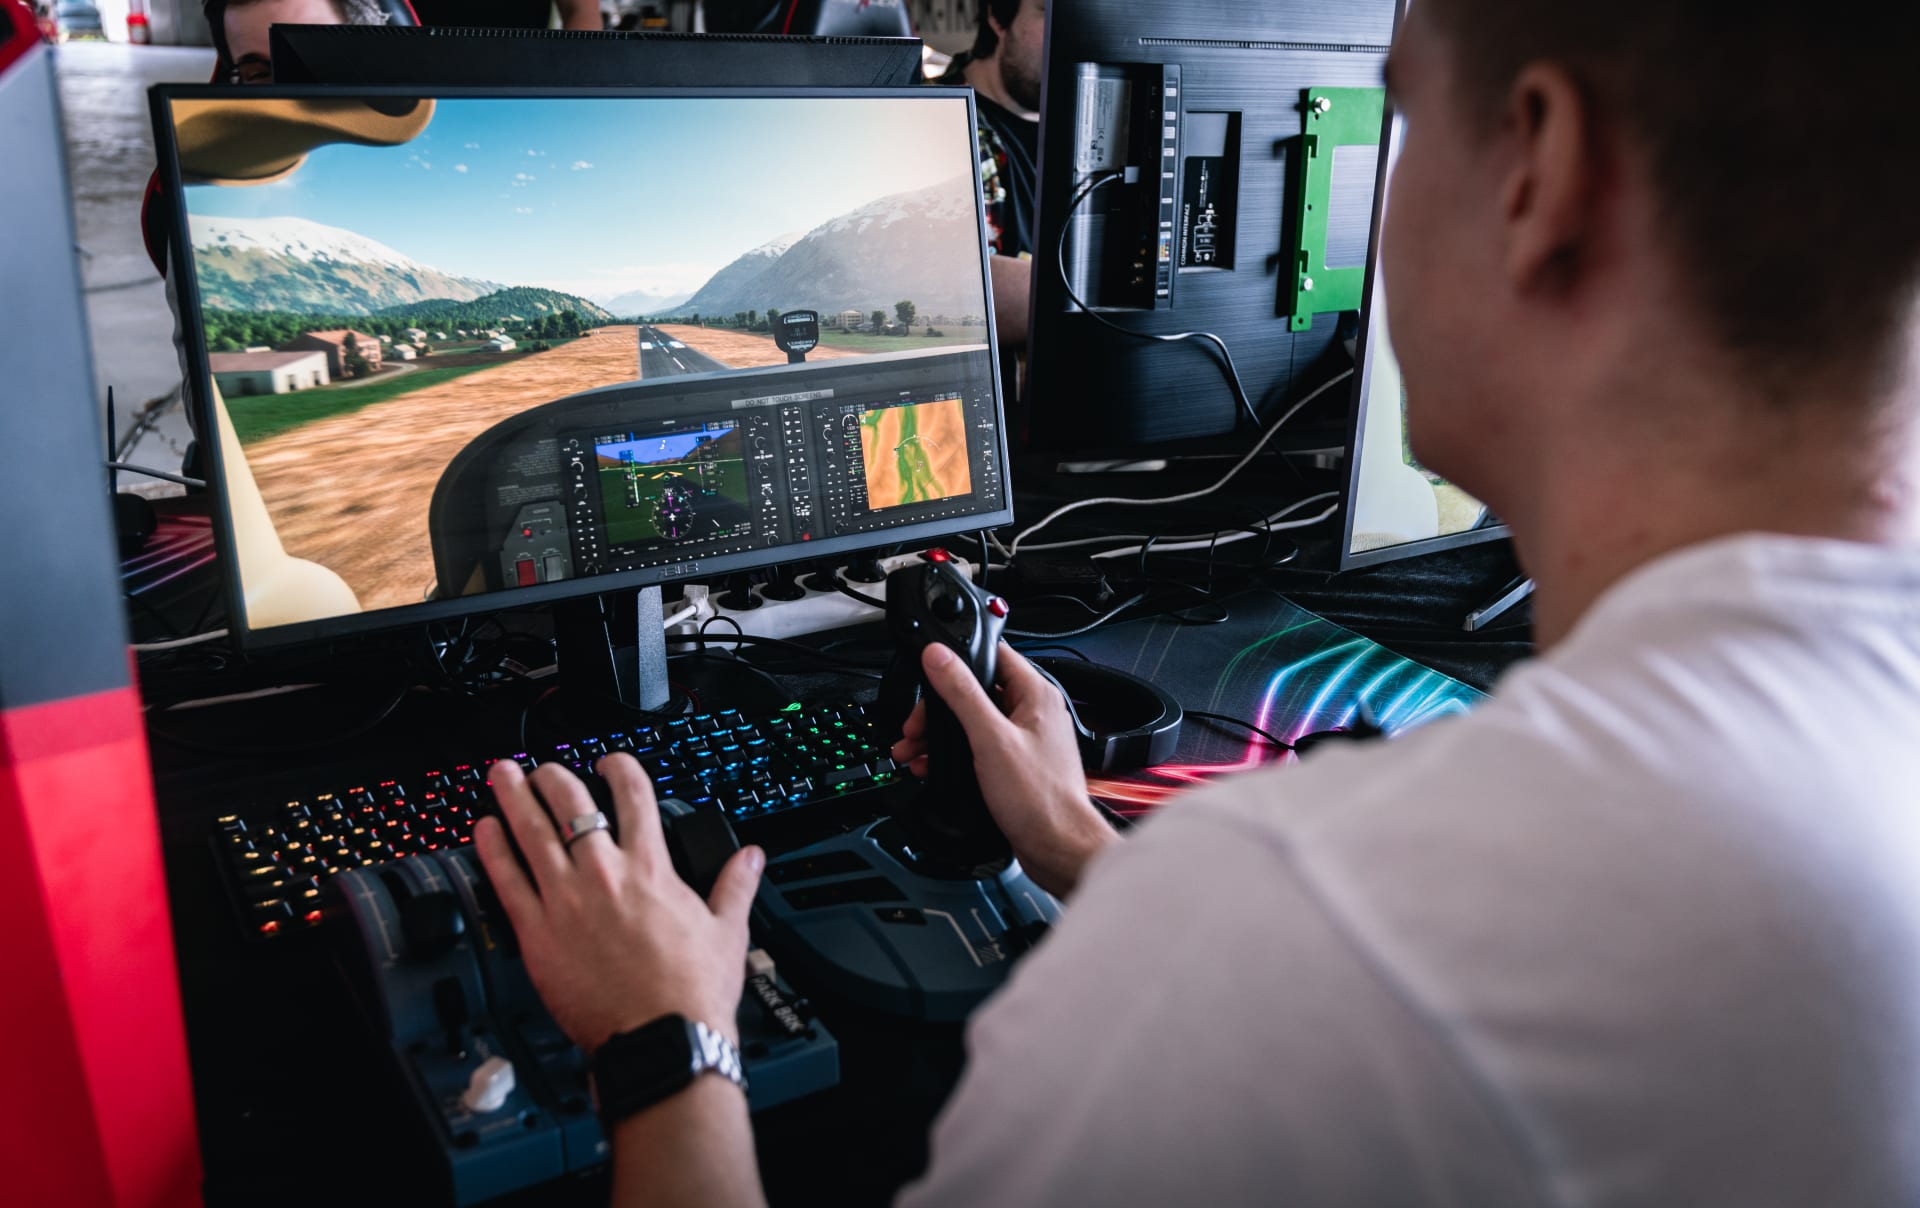 Díky českému zastoupení Xboxu si štáb pořadu Enter mohl vyzkoušet Microsoft Flight Simulator i naživo.